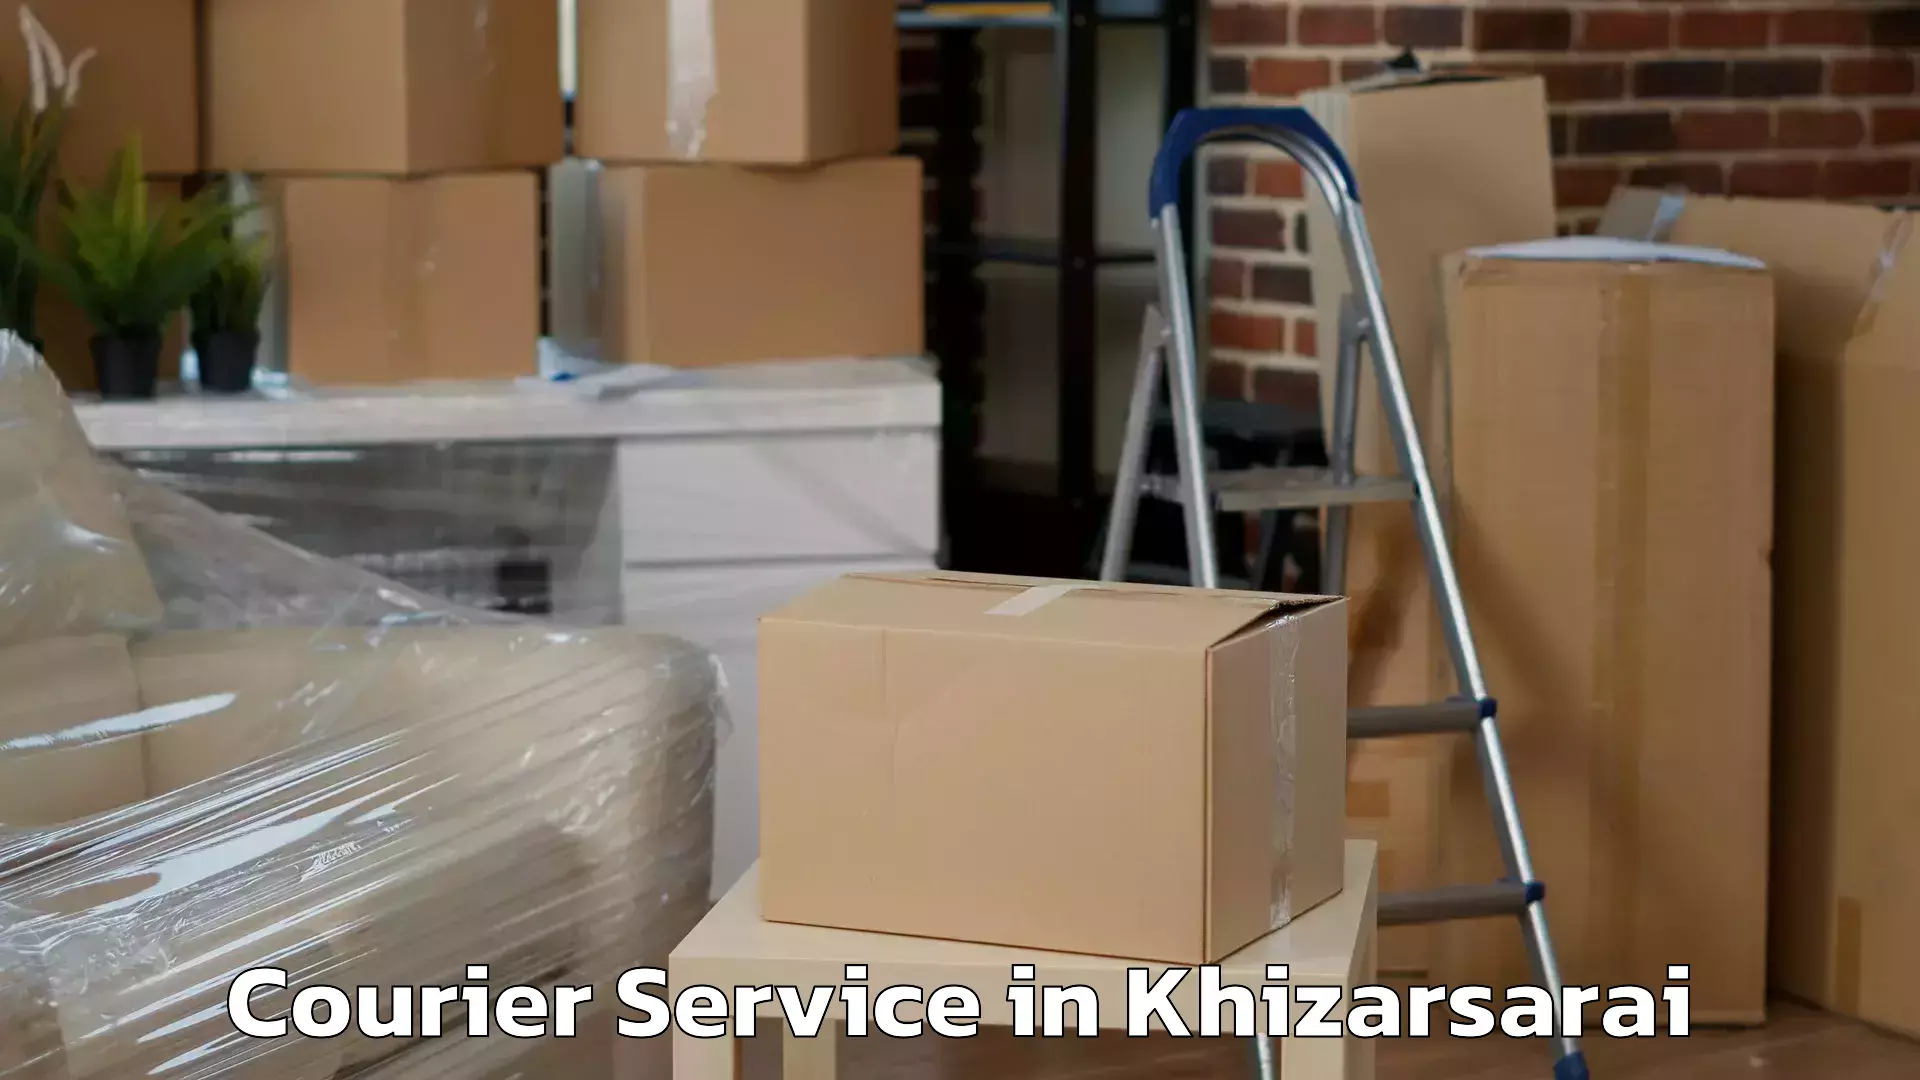 Overnight delivery services in Khizarsarai